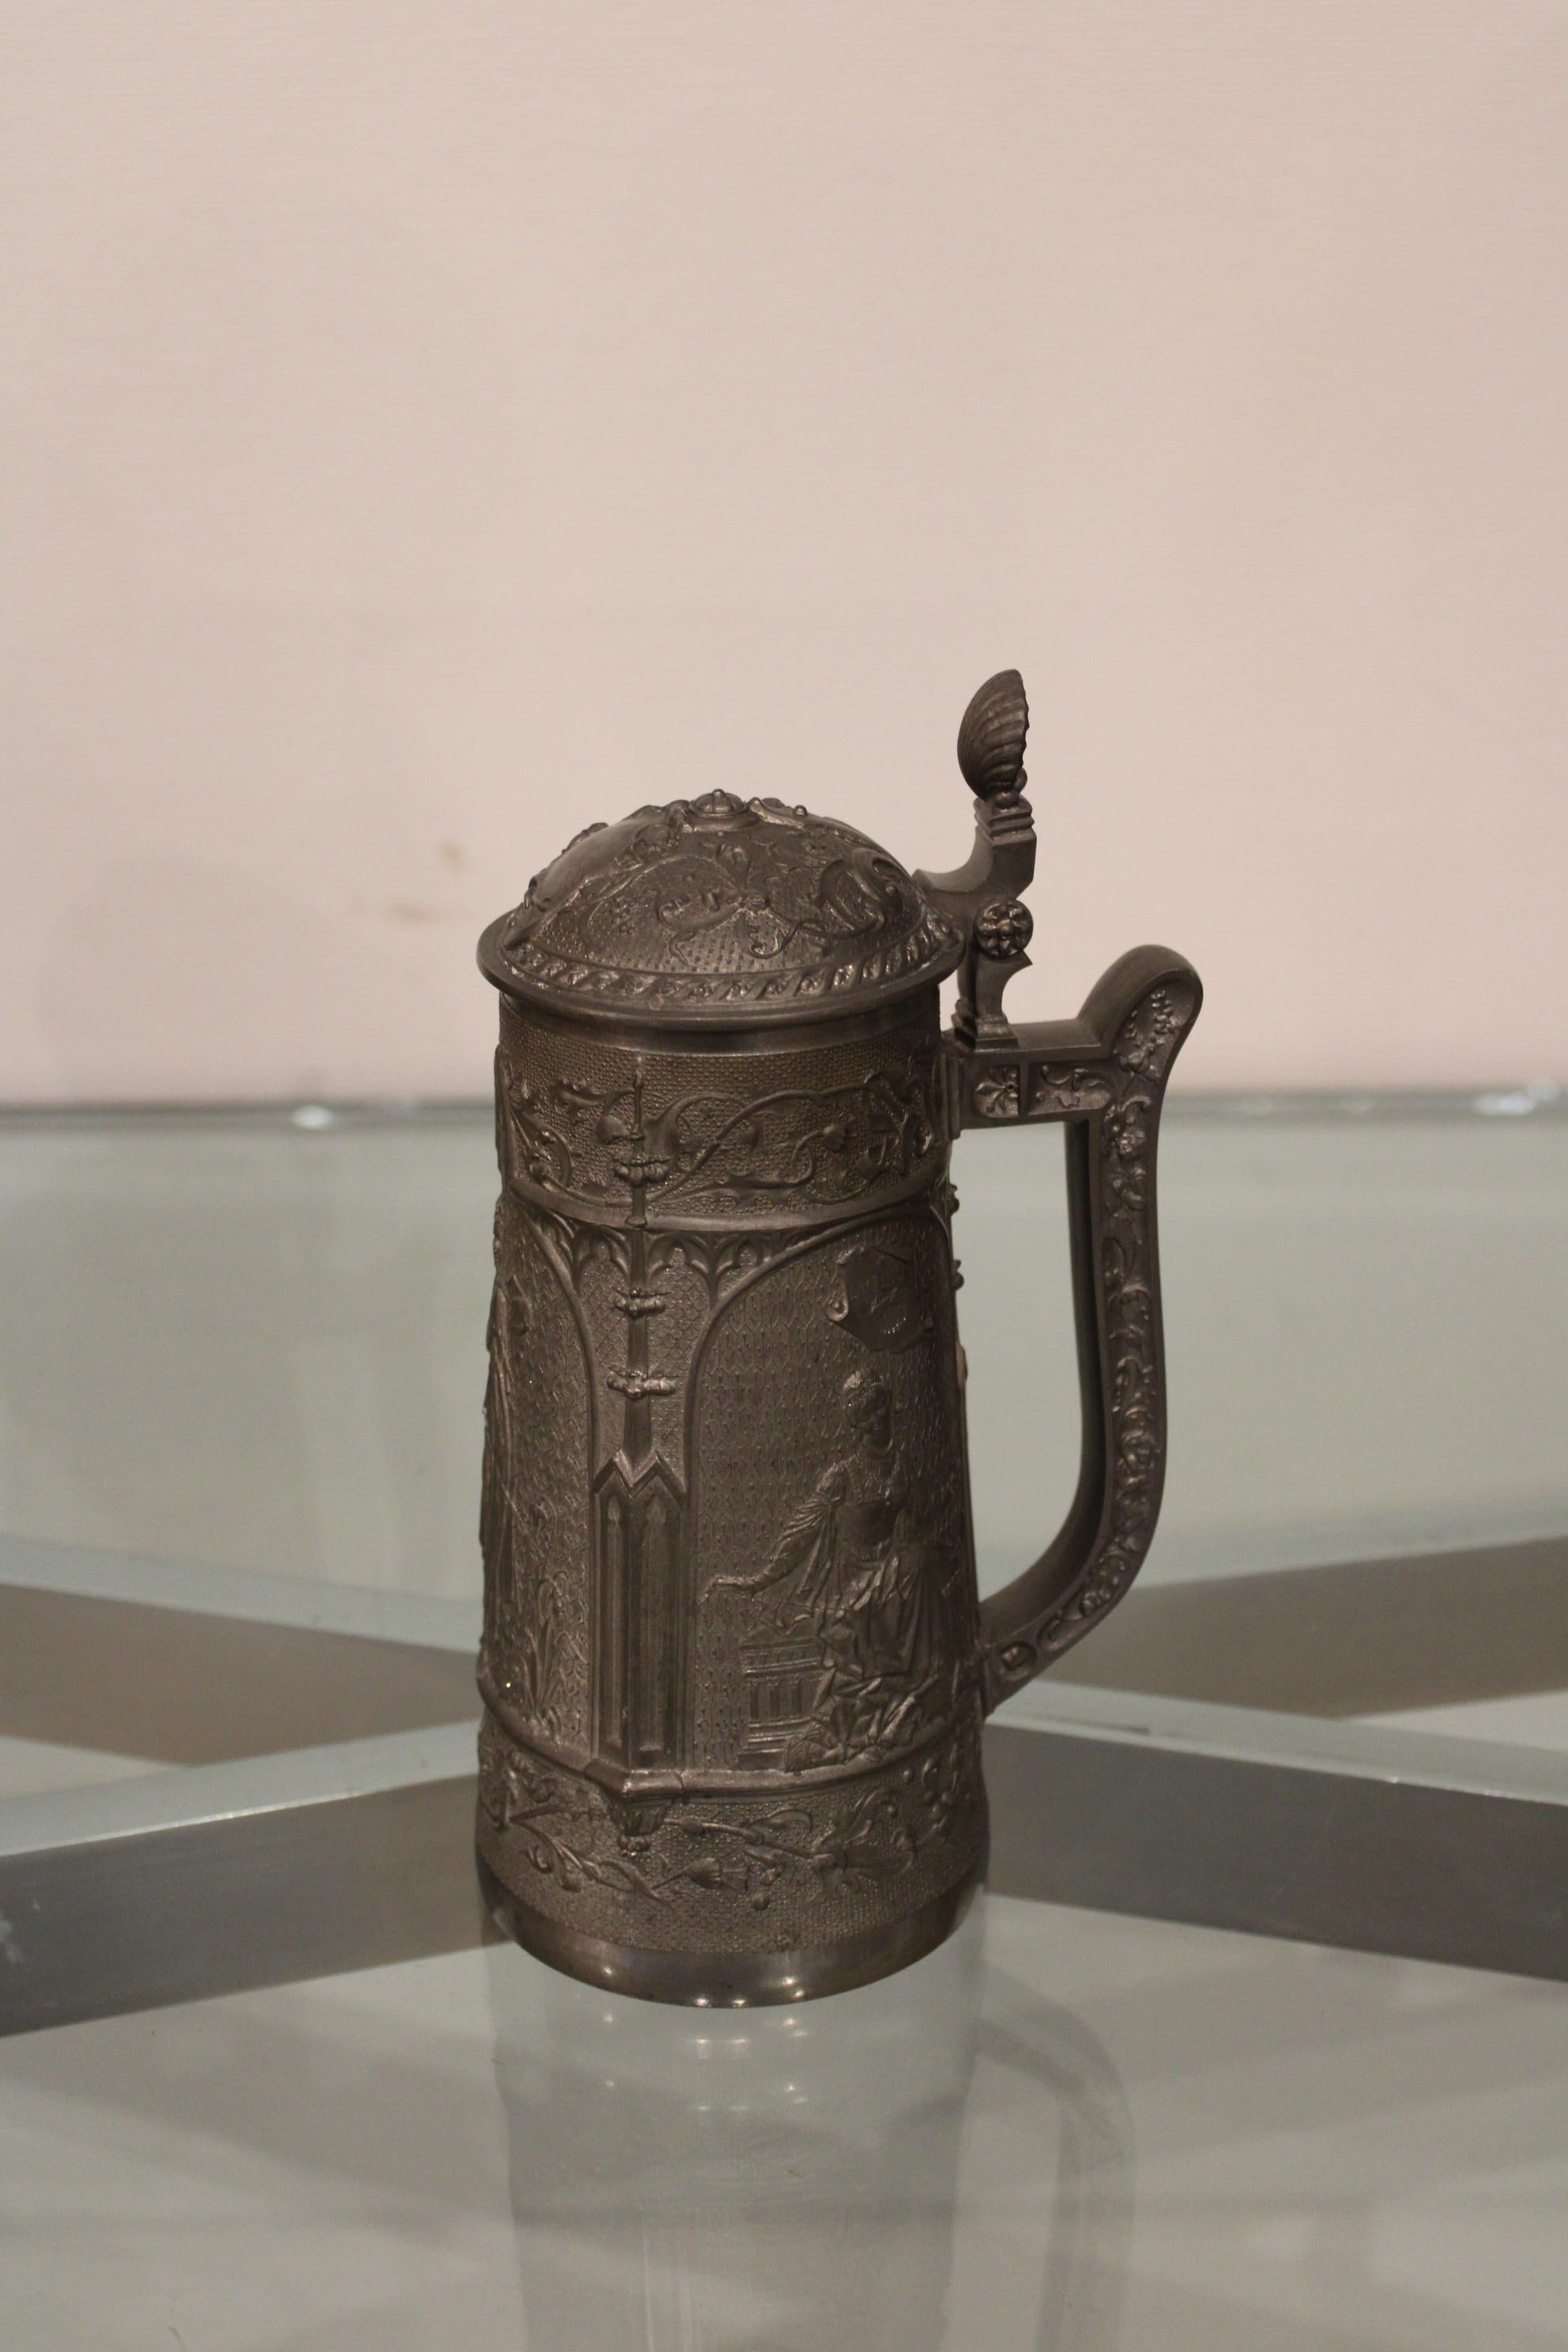 Pewter beer mug
circa 1900.